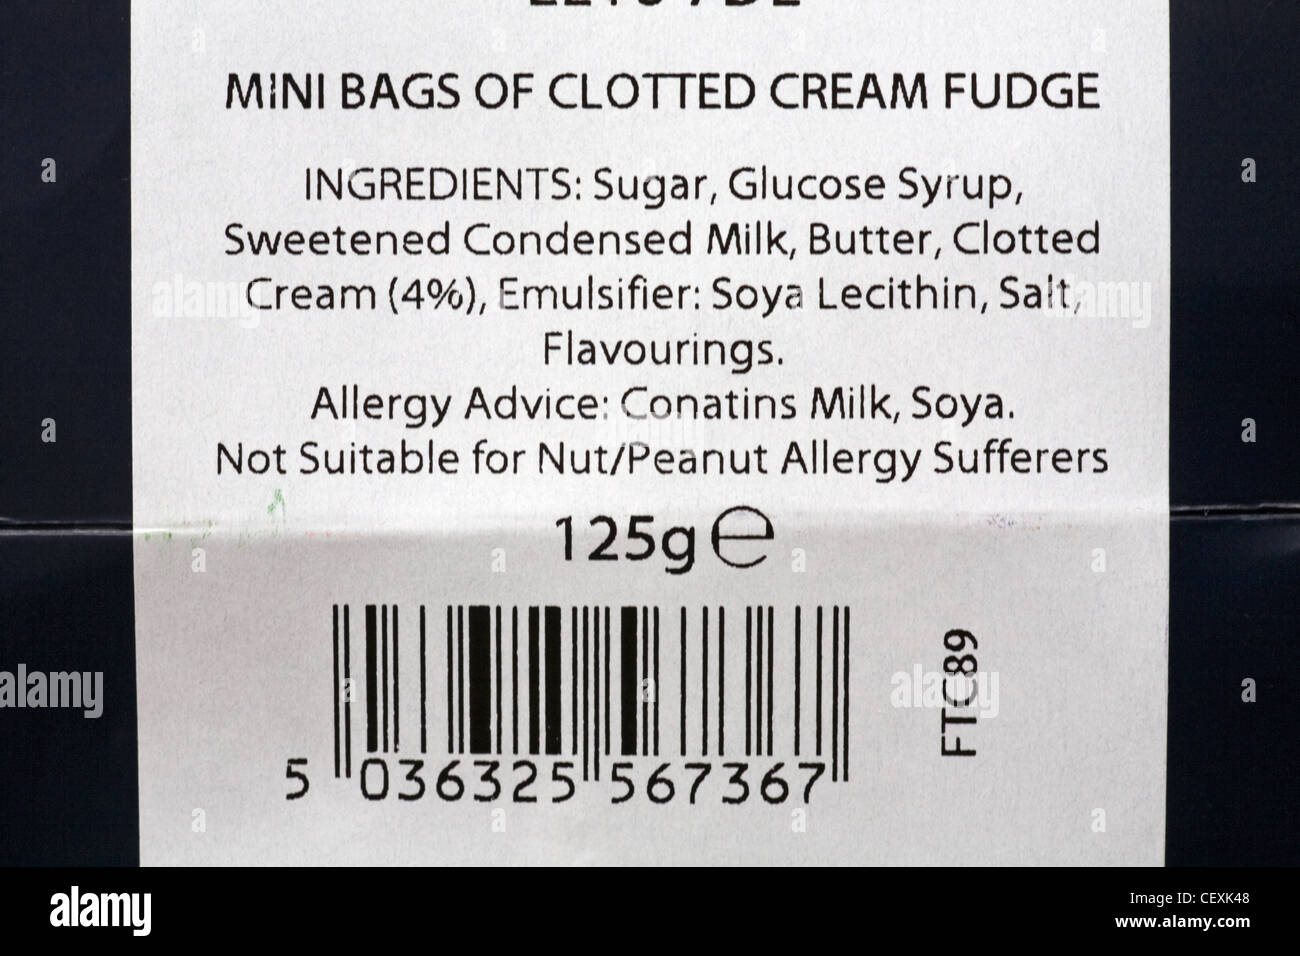 Ingredienti e allergia consigli sulla confezione di mini sacchetti di clotted cream fudge Foto Stock